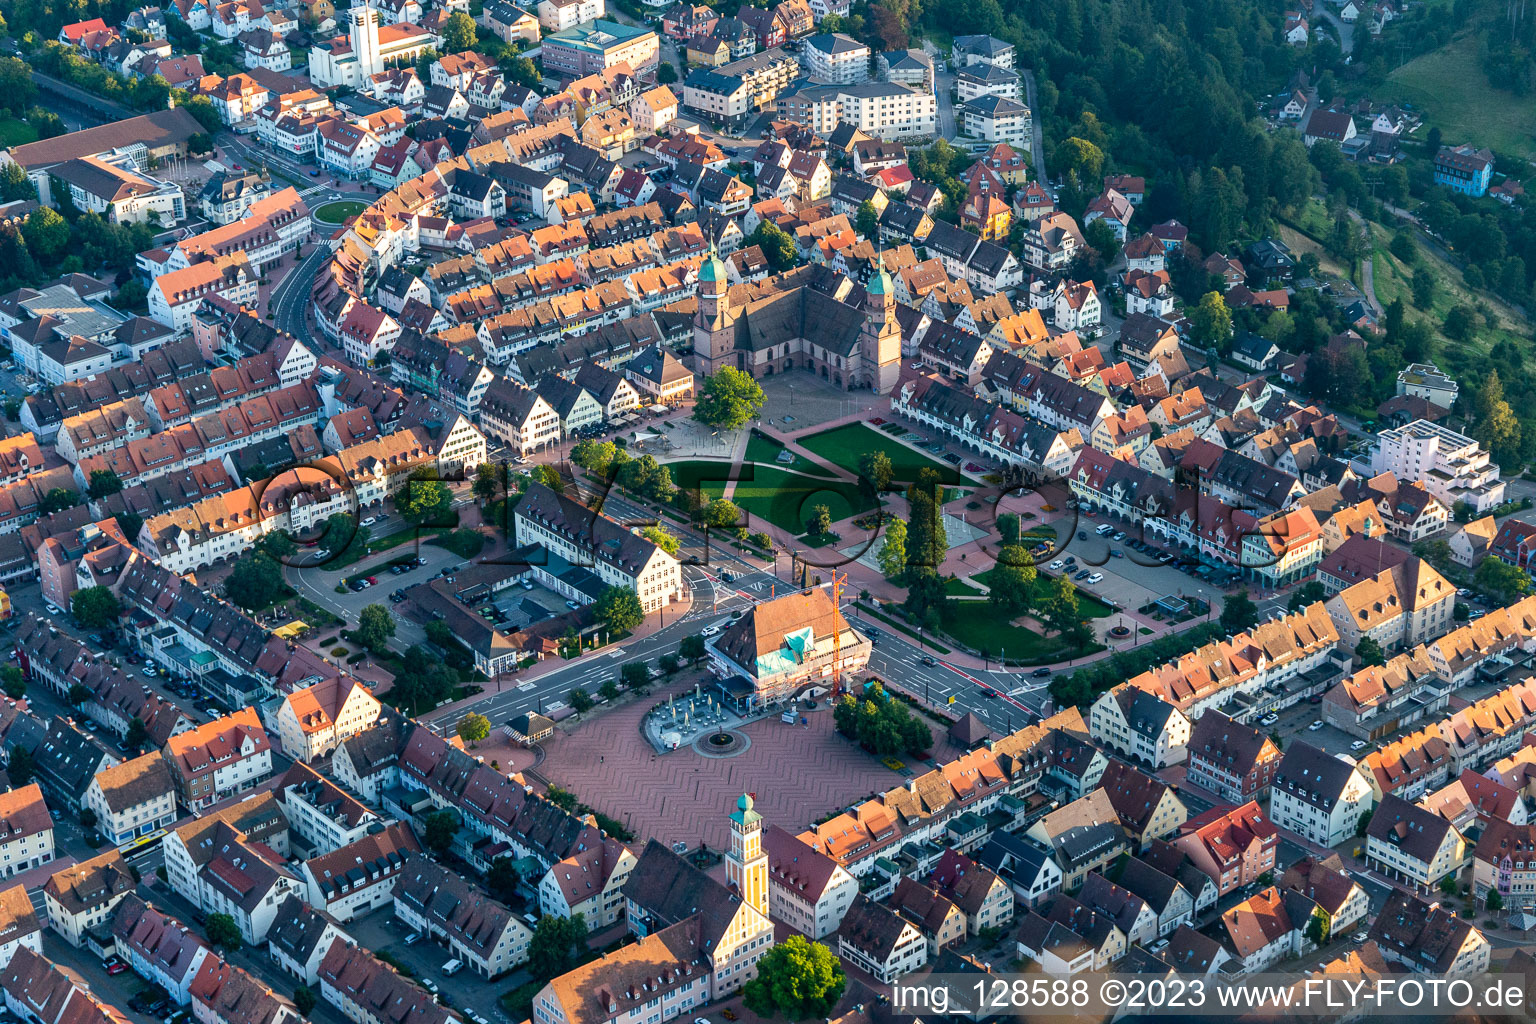 Photographie aérienne de Hôtel de ville de l'administration municipale sur la place du marché au centre-ville à Freudenstadt dans le département Bade-Wurtemberg, Allemagne